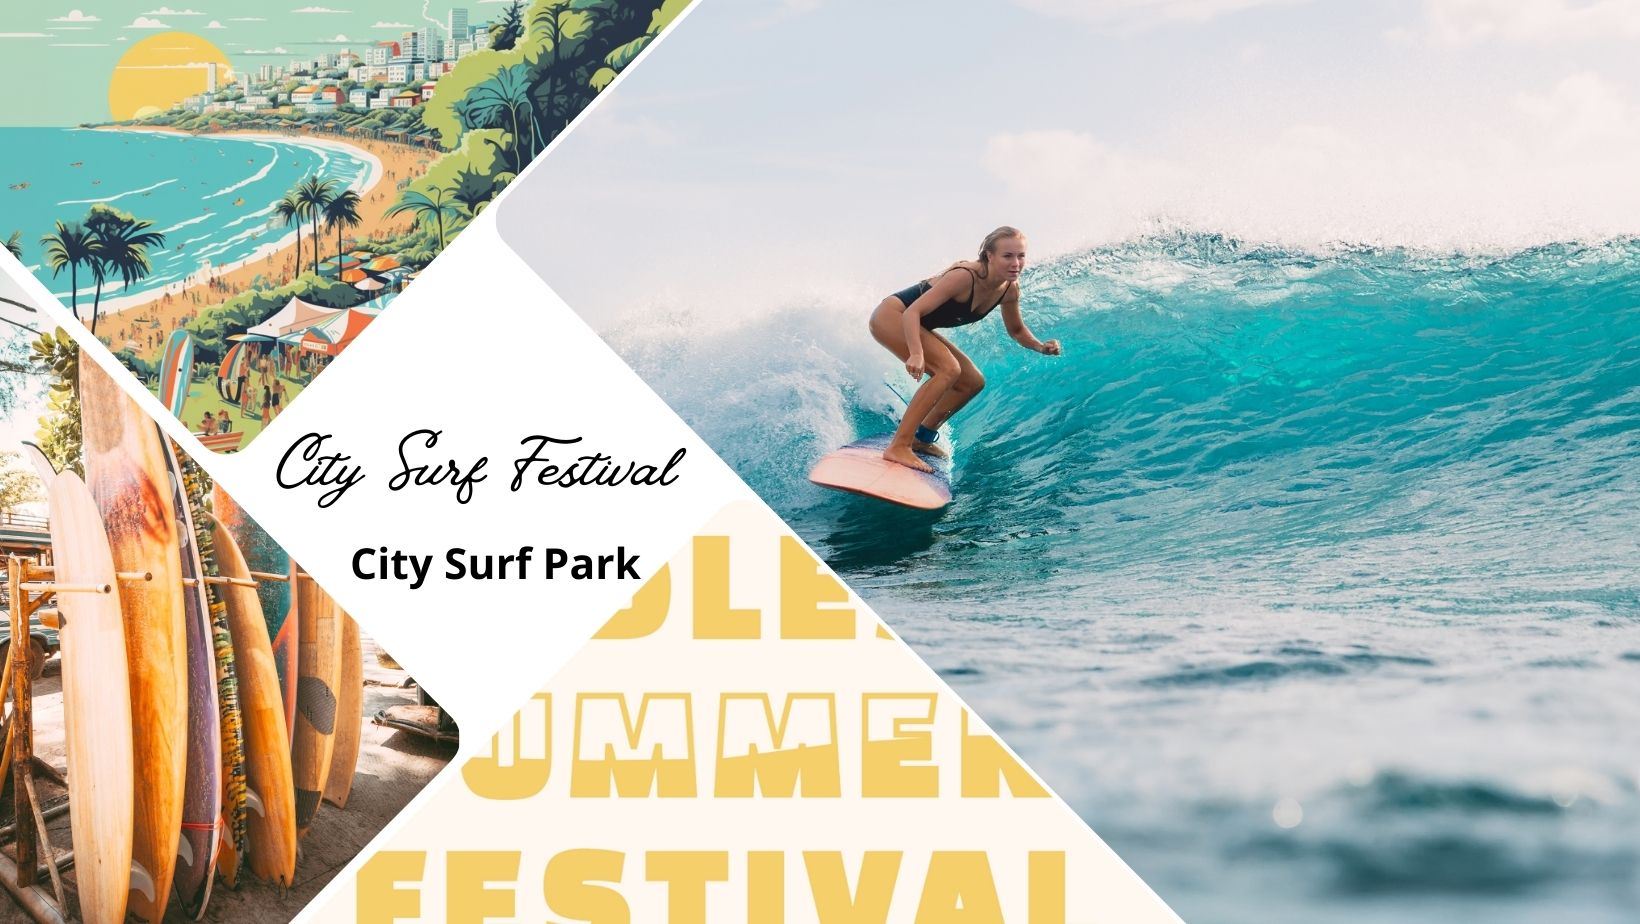 City Surf Festival : venez surfer sur la vague et prolonger l'été au City Surf Park de Décines !